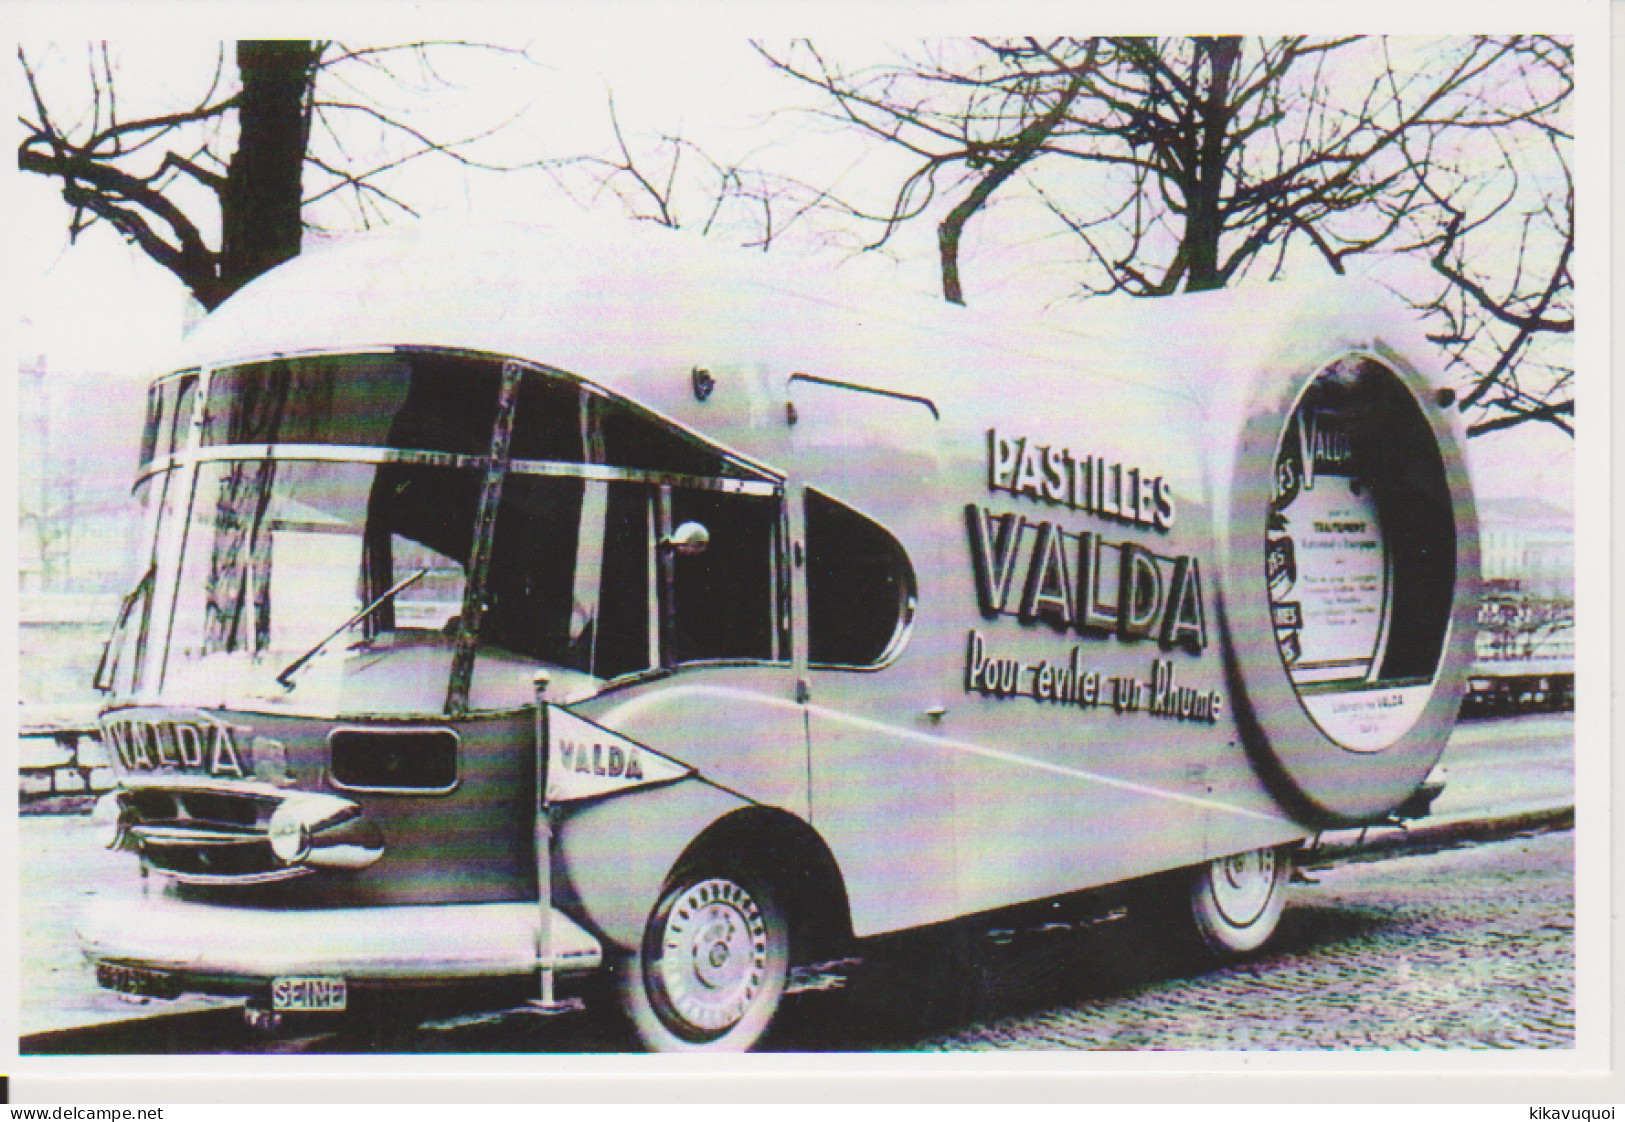 CAMION PUB VALDA TOUR DE FRANCE 1955 - Carte Postale 10X15 CM NEUF - Voitures De Tourisme